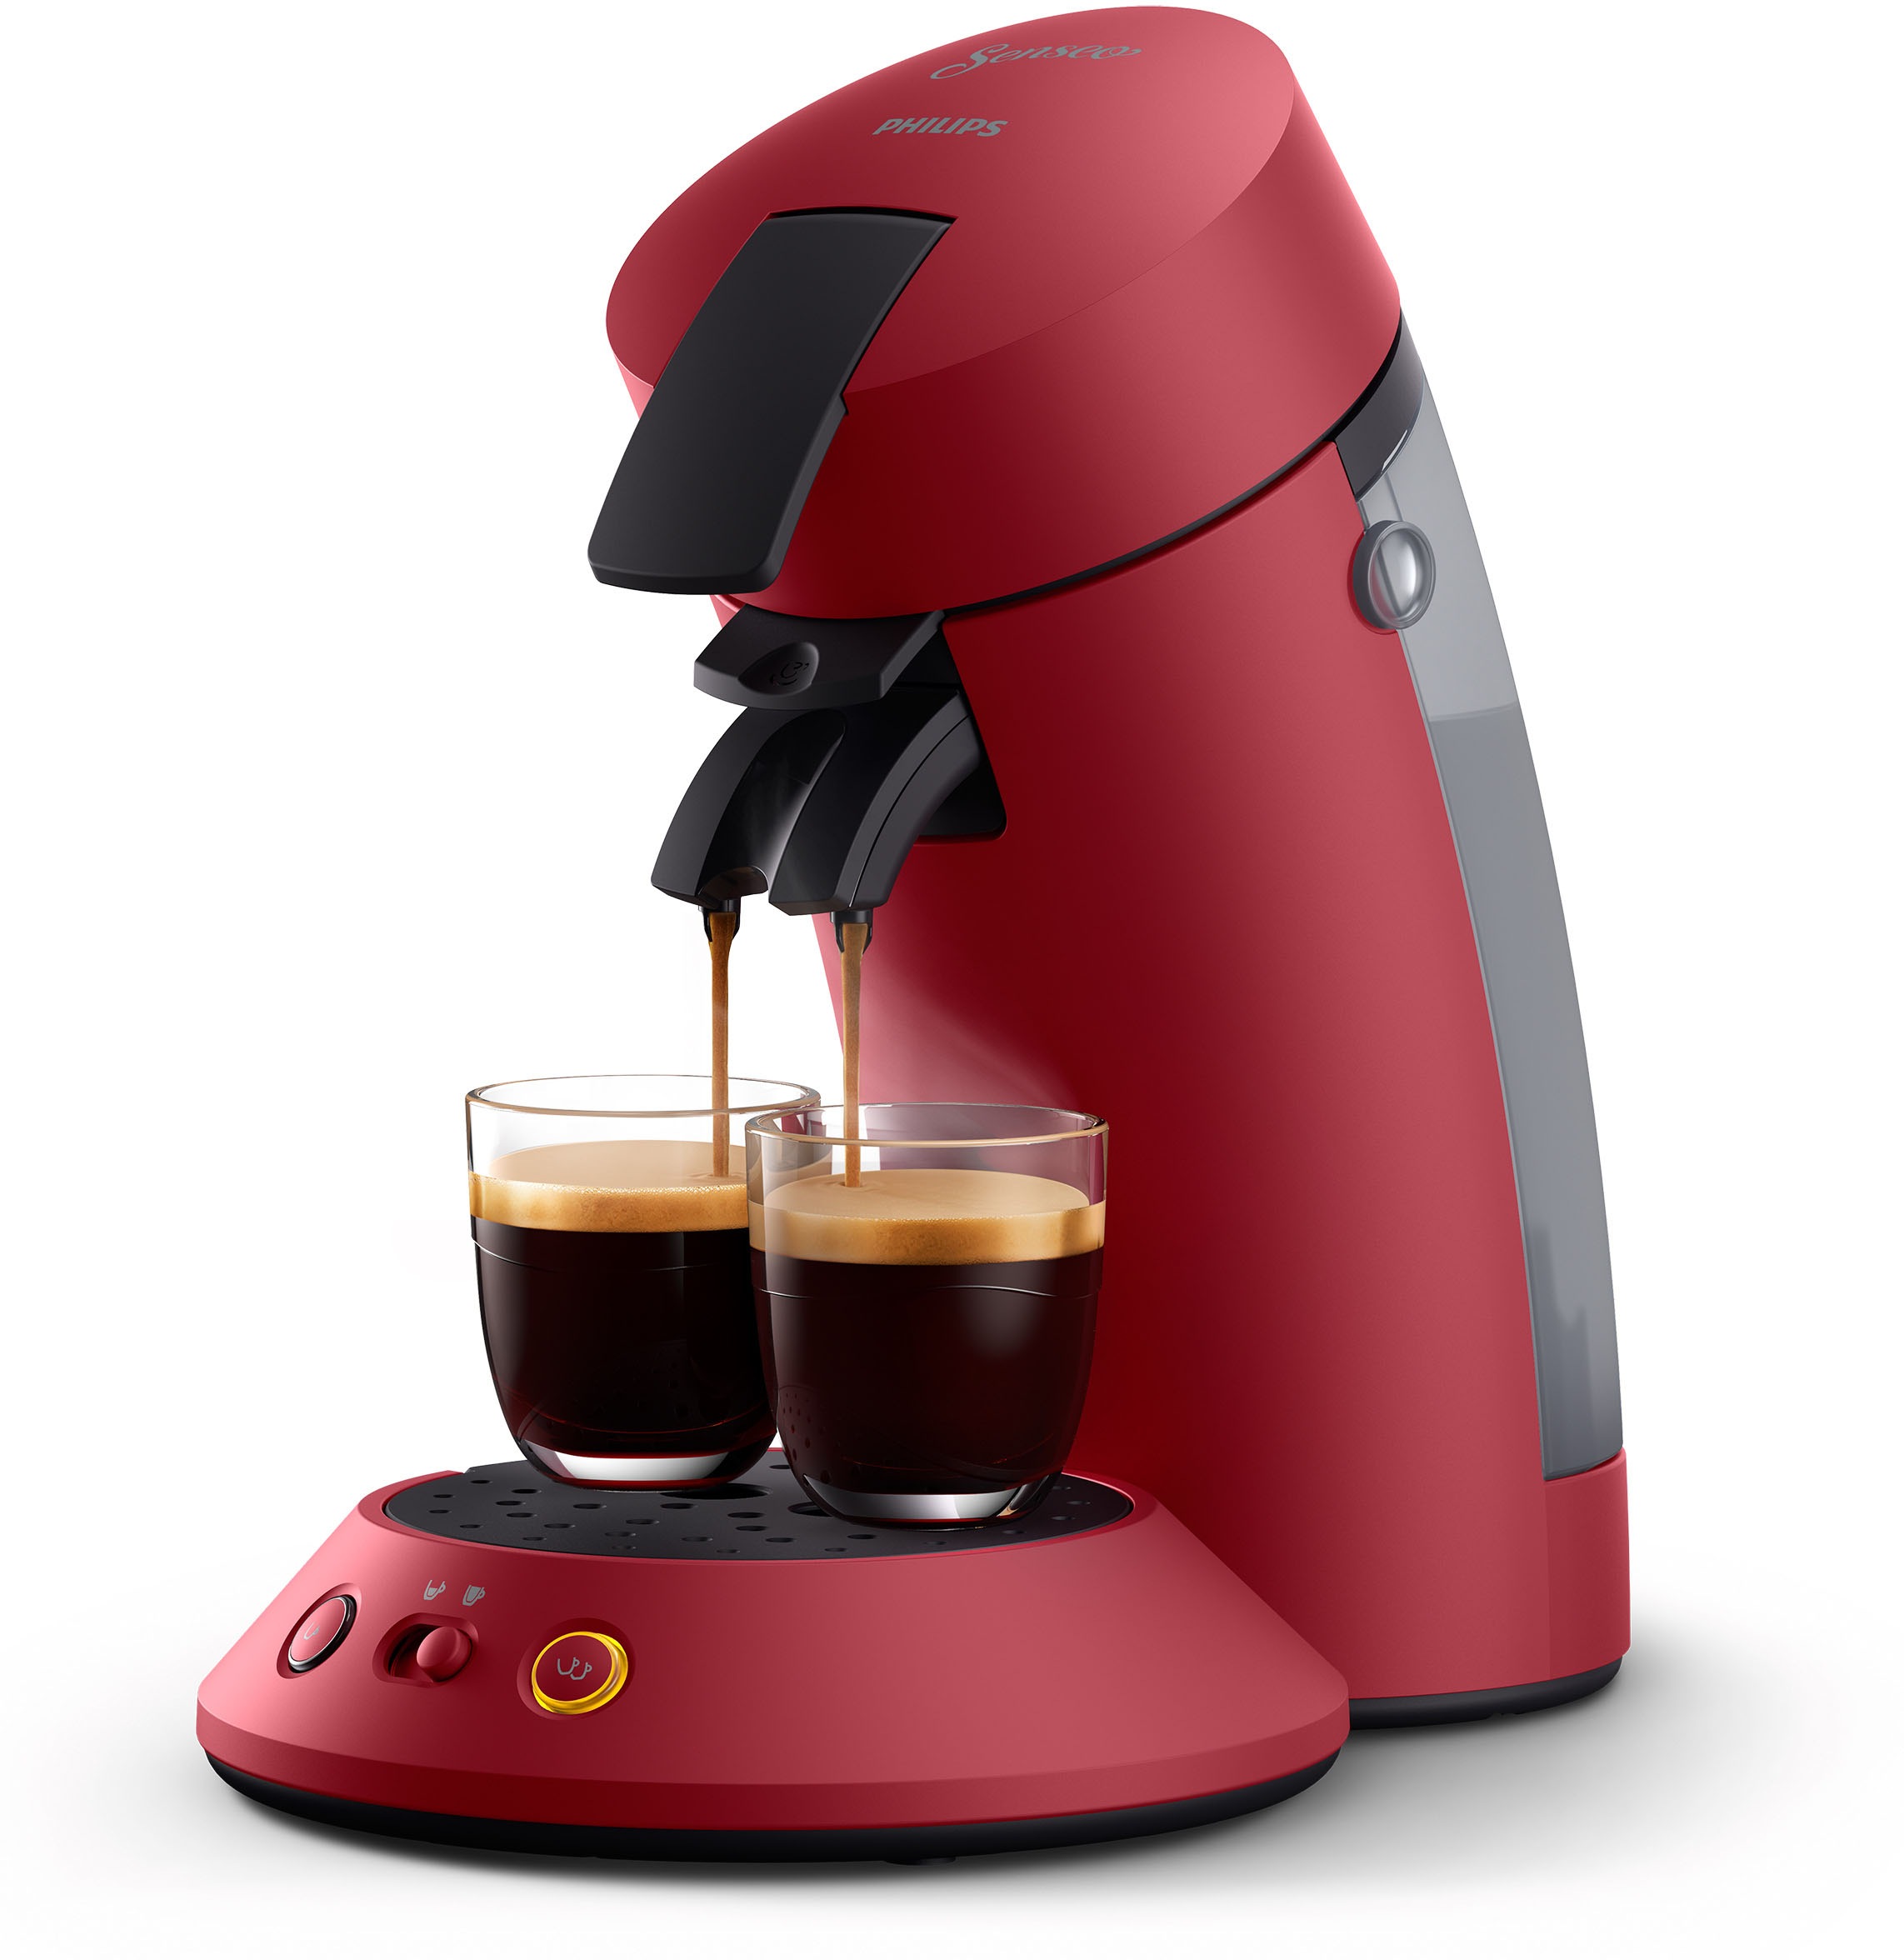 Philips Senseo Kaffeepadmaschine „Original Plus CSA210/90“, inkl. Gratis-Zugaben im Wert von 5,- UVP rot Rabatt: 24 %